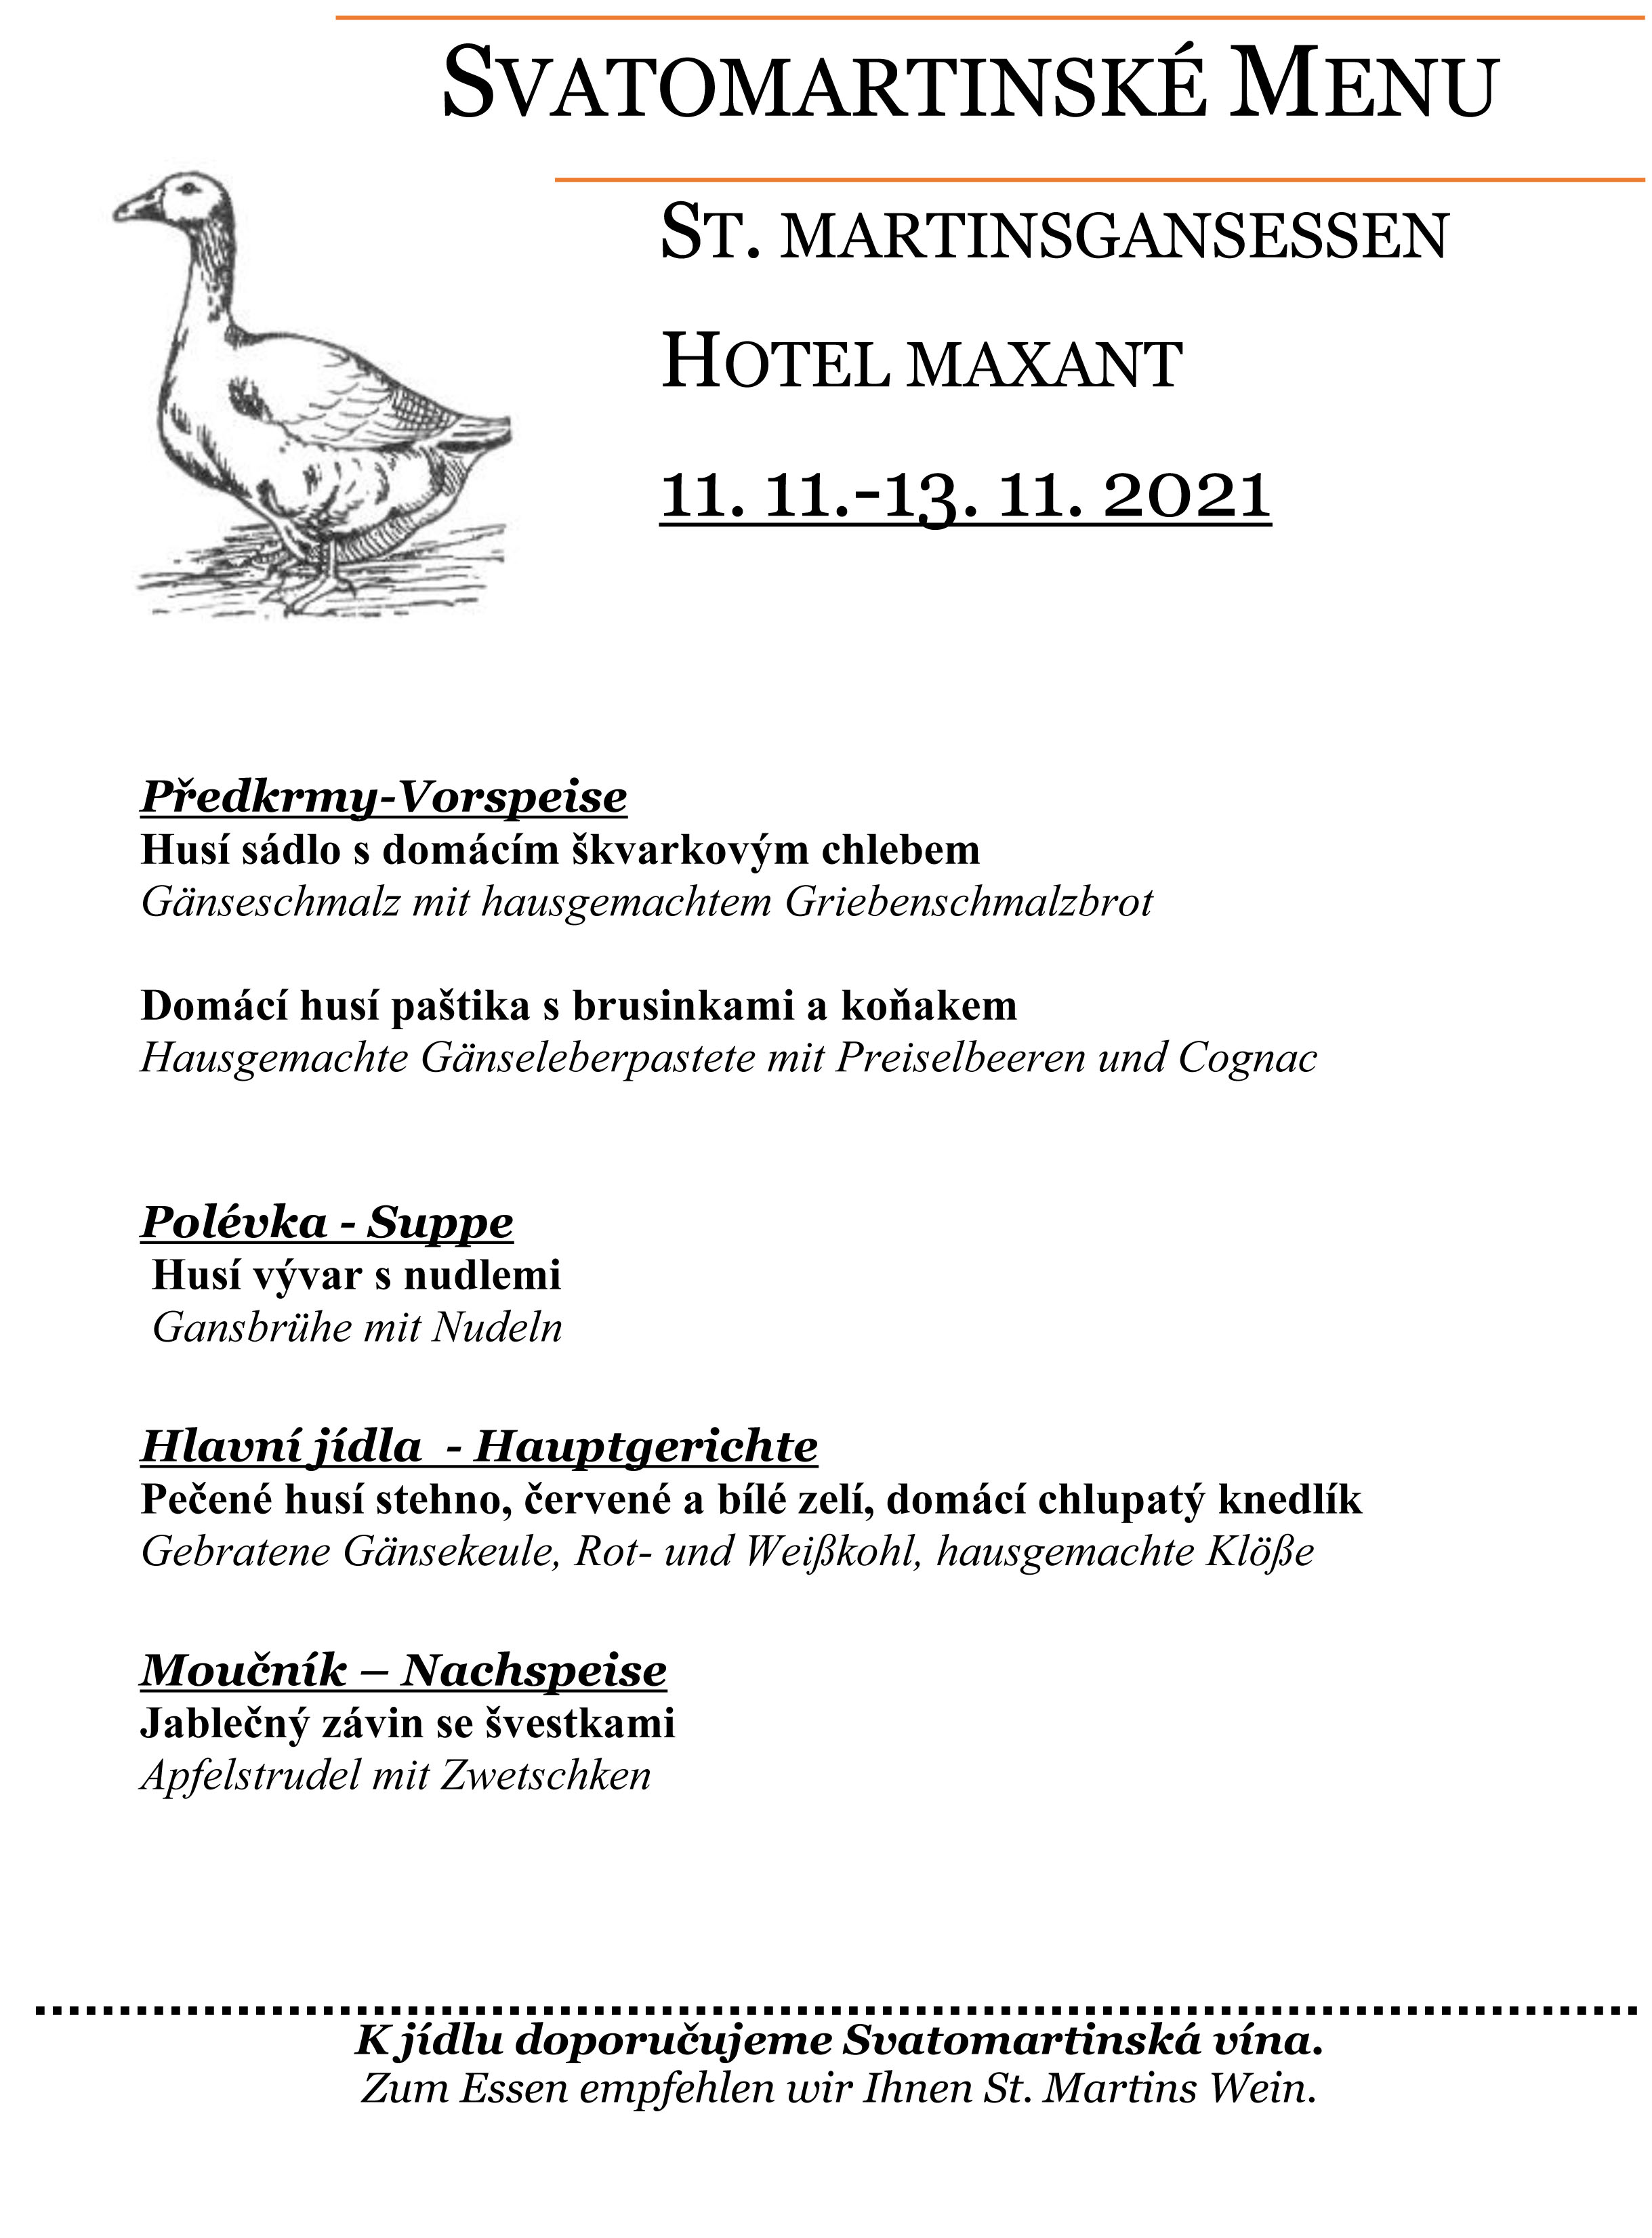 Husi hody v hotelu Maxant